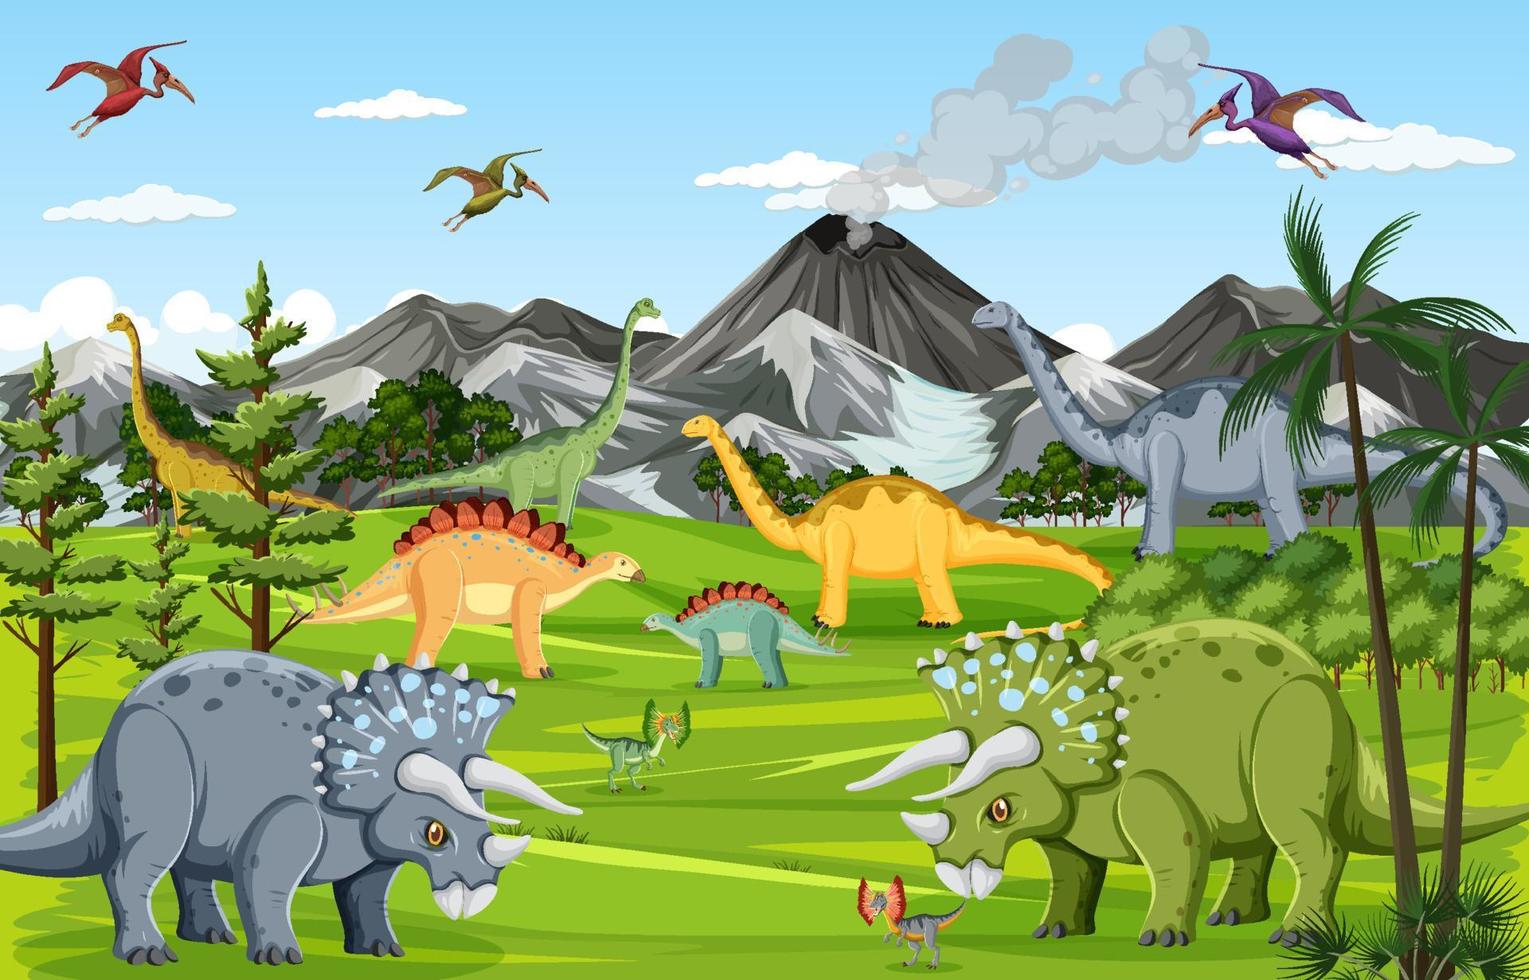 Dinosaur in prehistoric forest scene vector